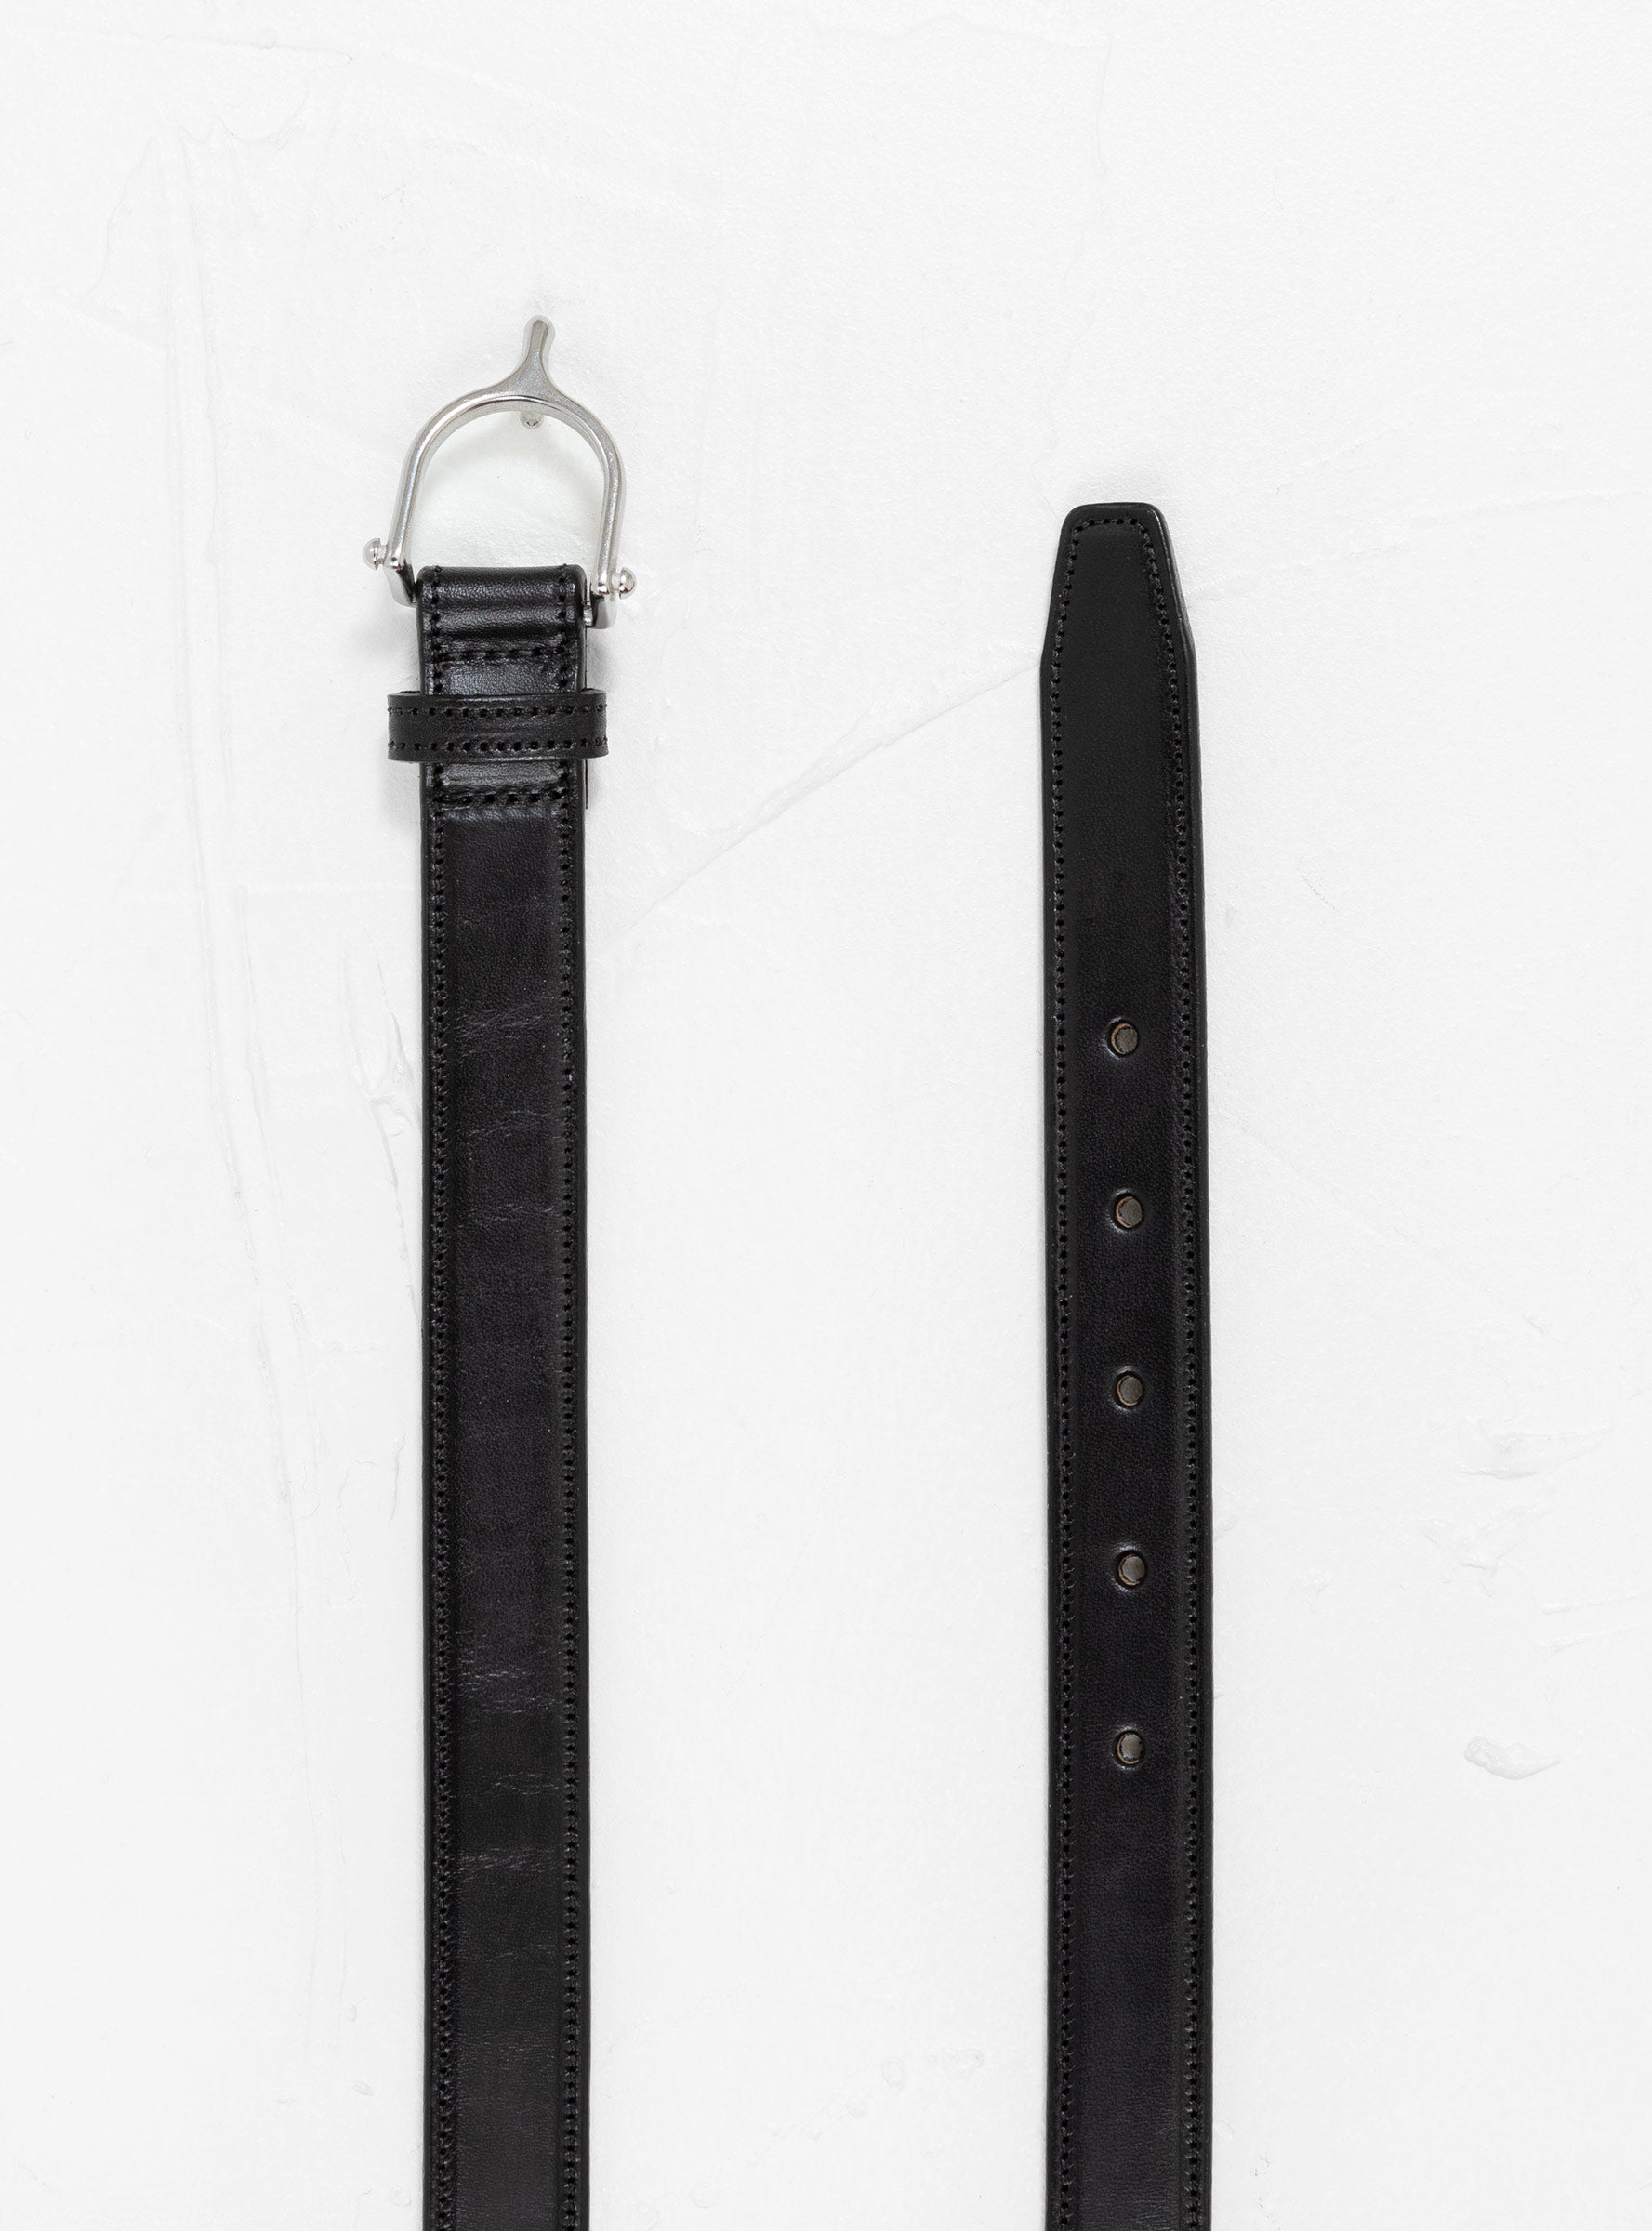  Tory Leather Spur Belt Black & Nickel - Large